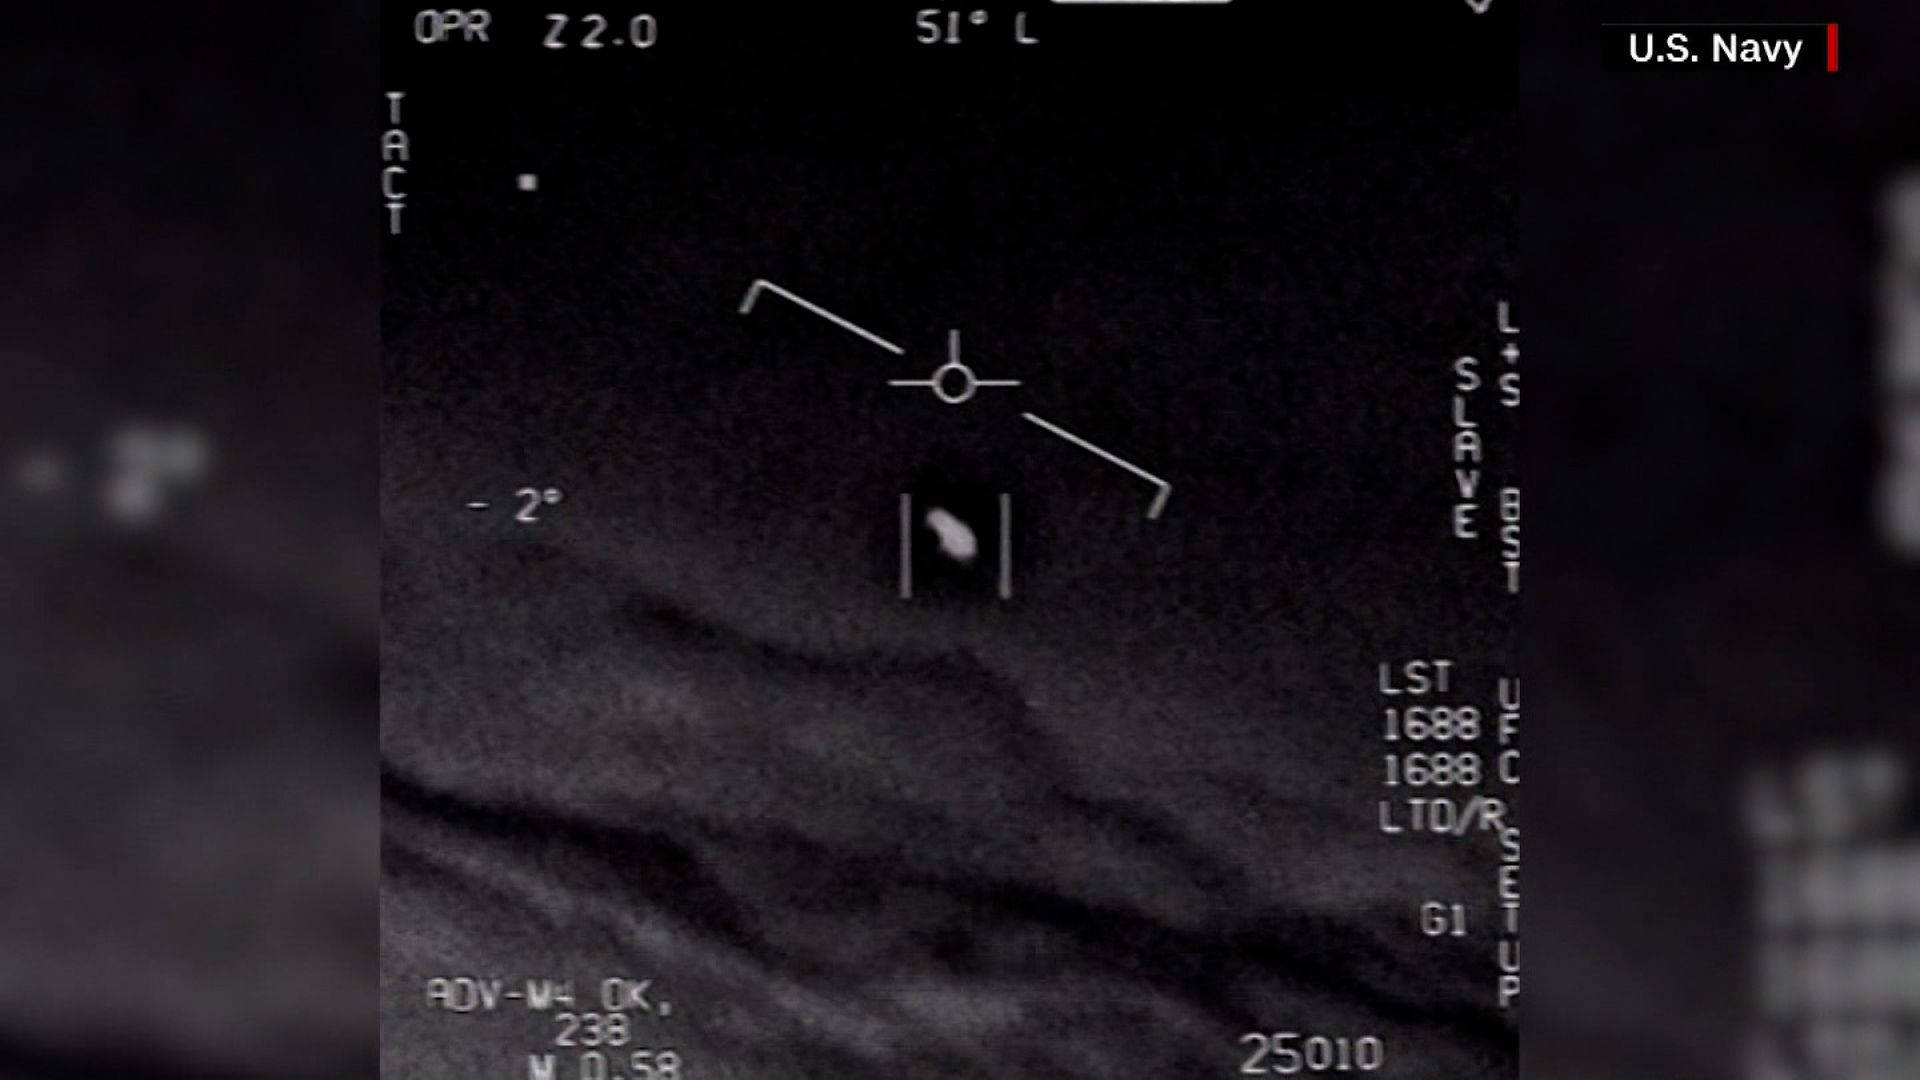 UFO Military Photo